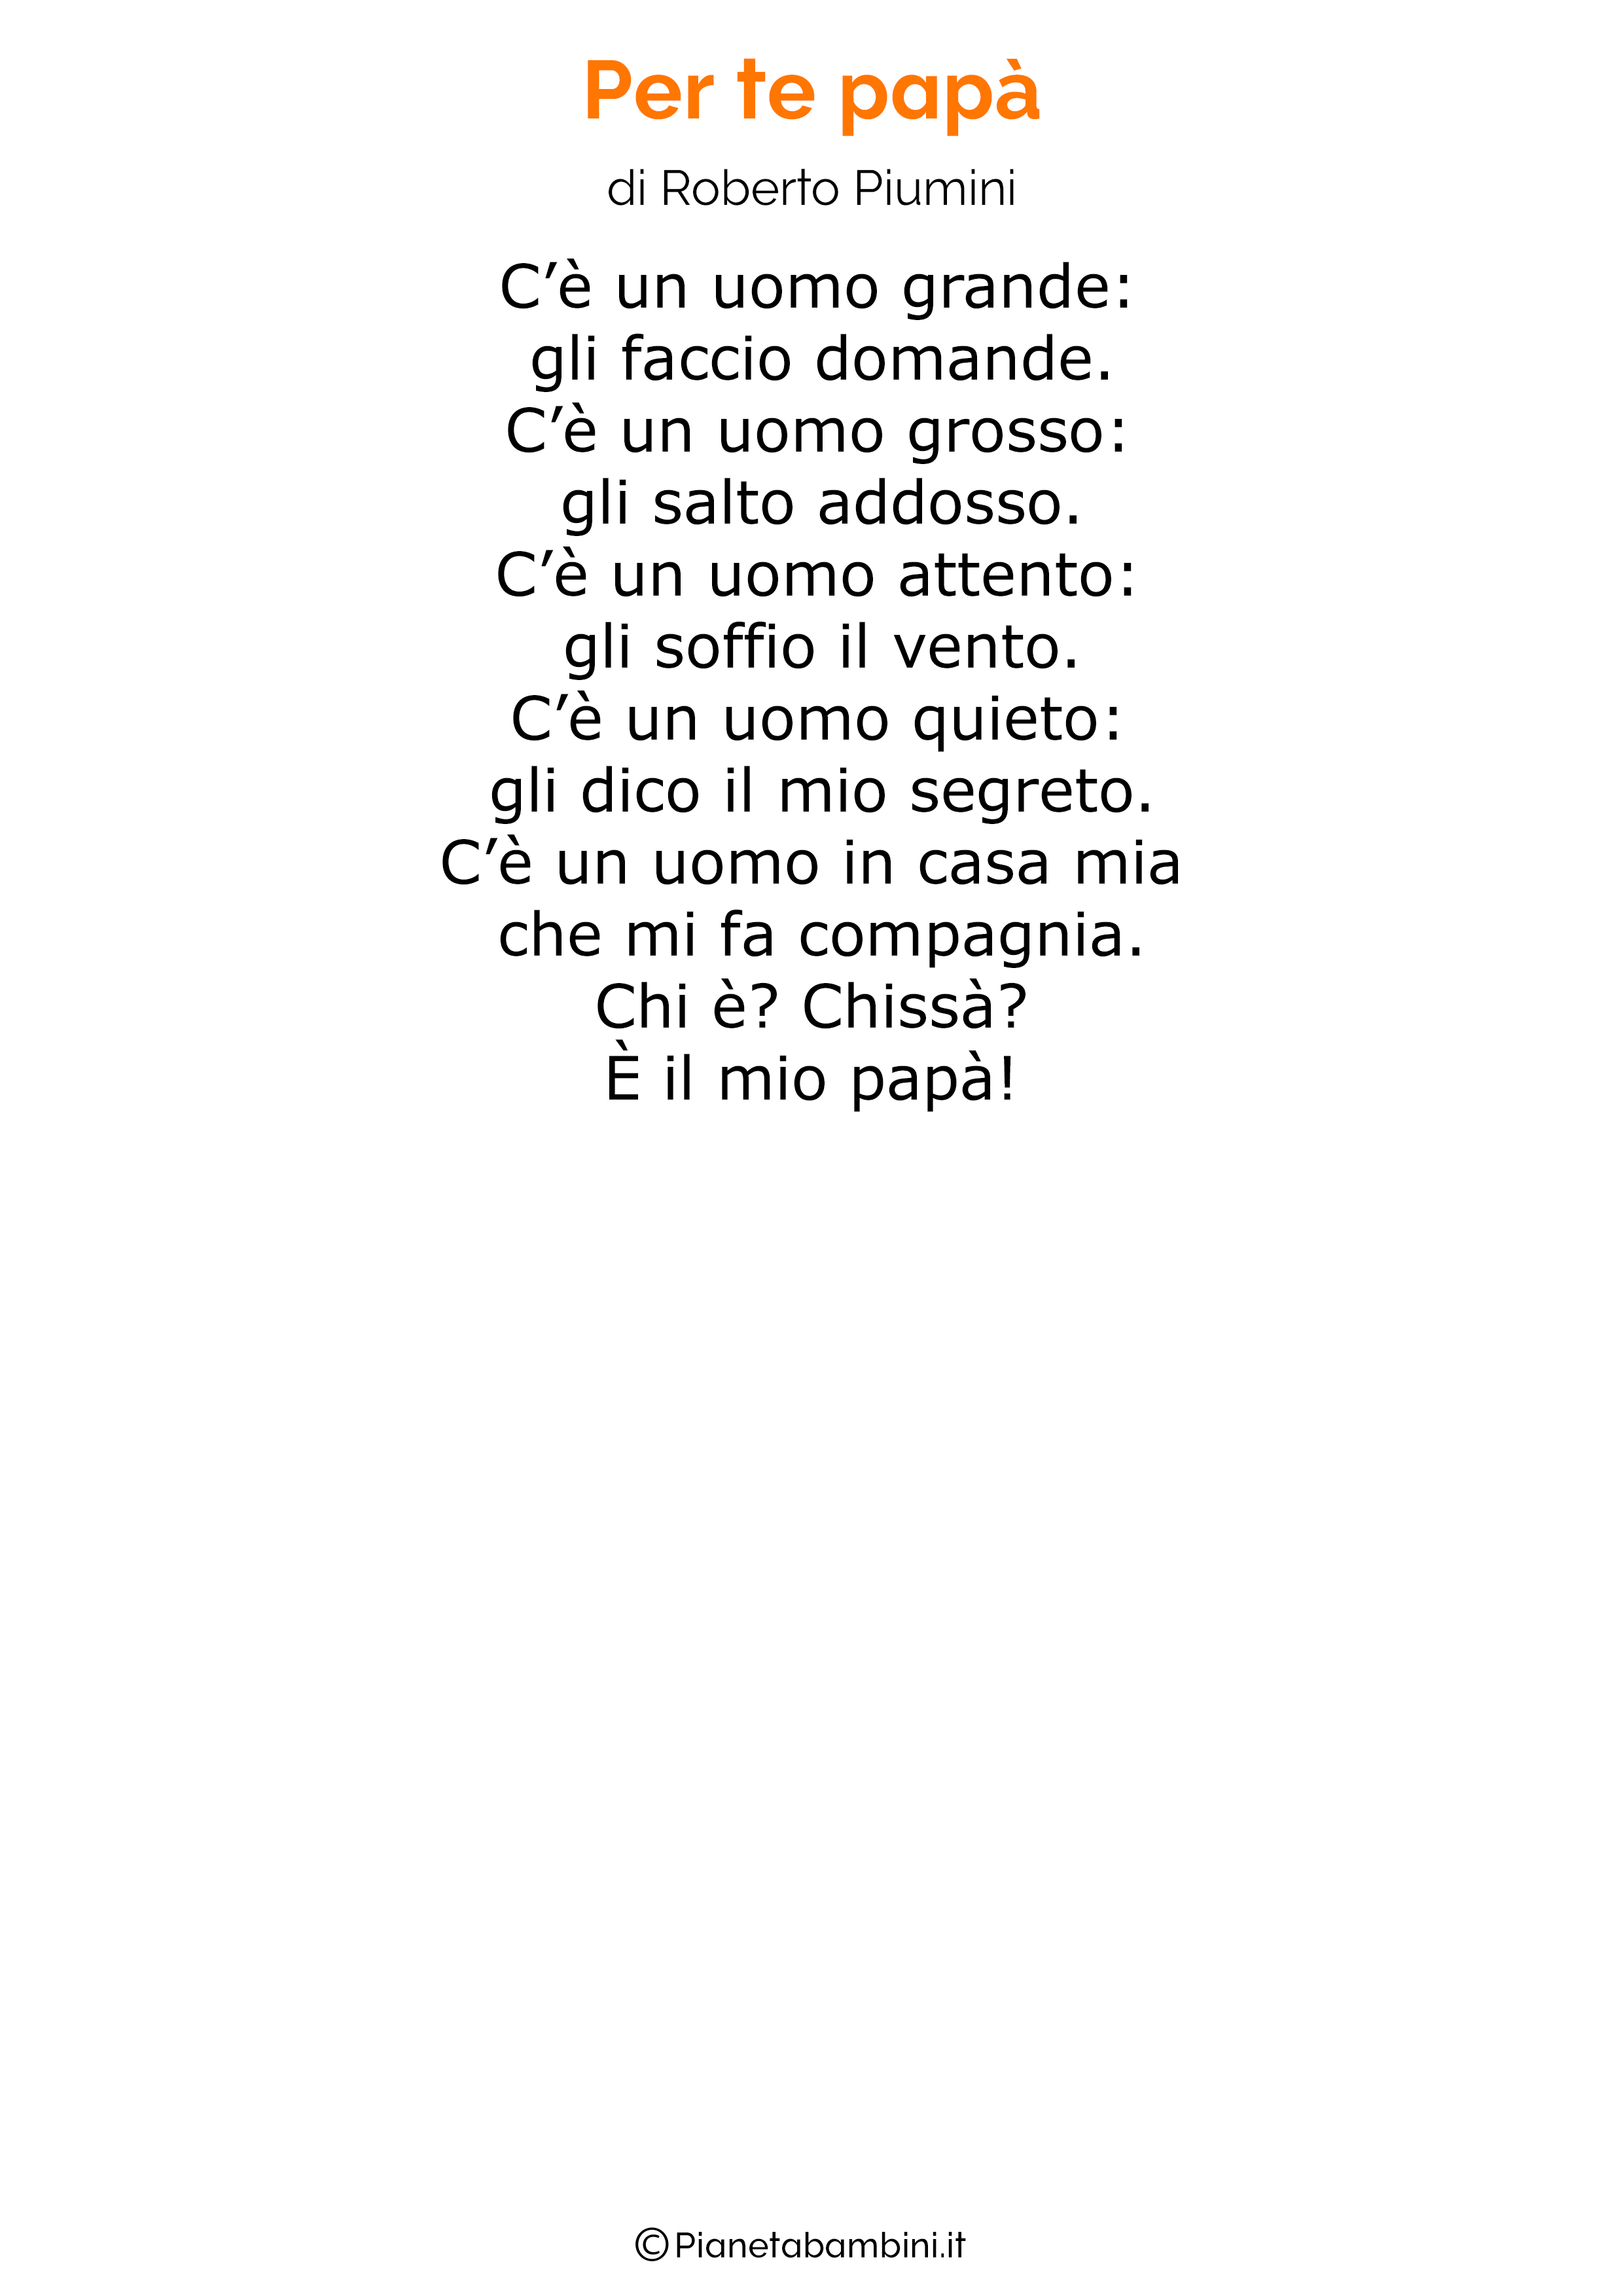 Poesia per la festa del papa per bambini 24